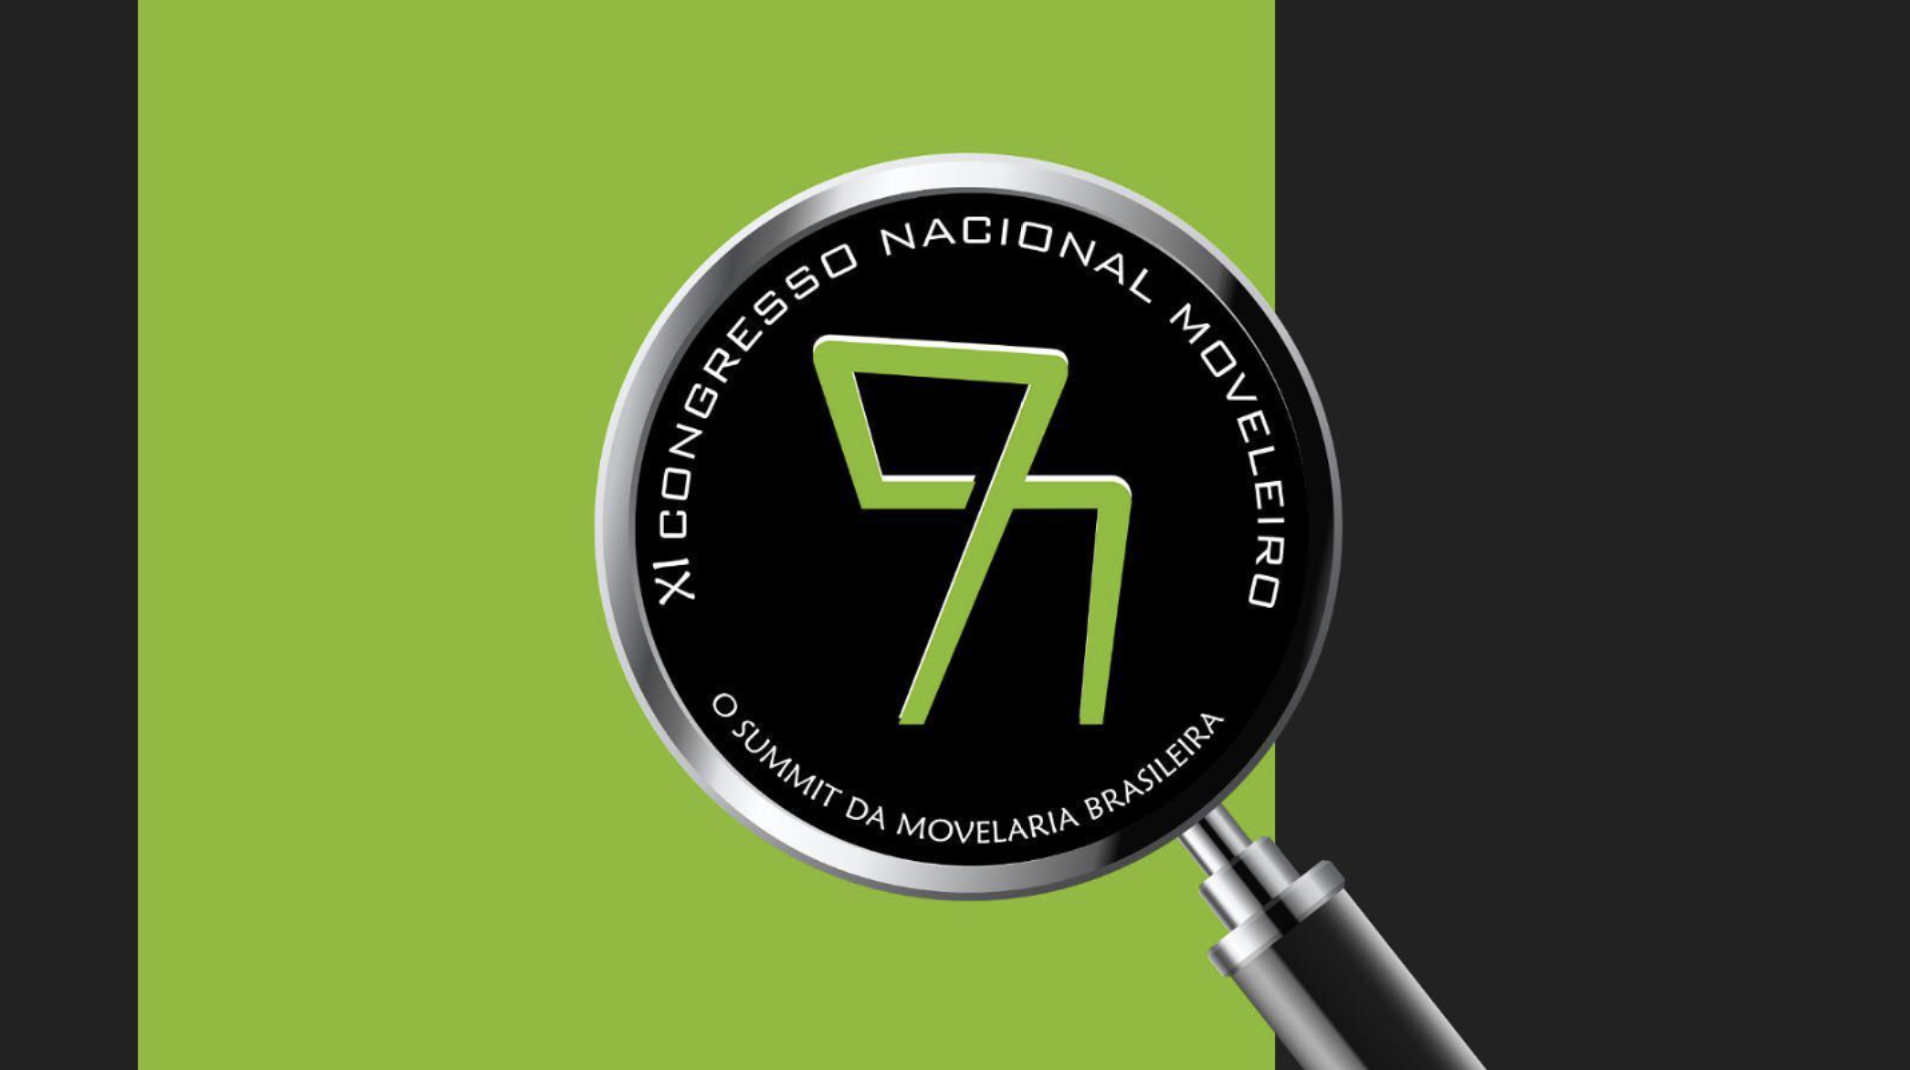 11º Congresso Nacional Moveleiro ocorre no mês de outubro em Curitiba 